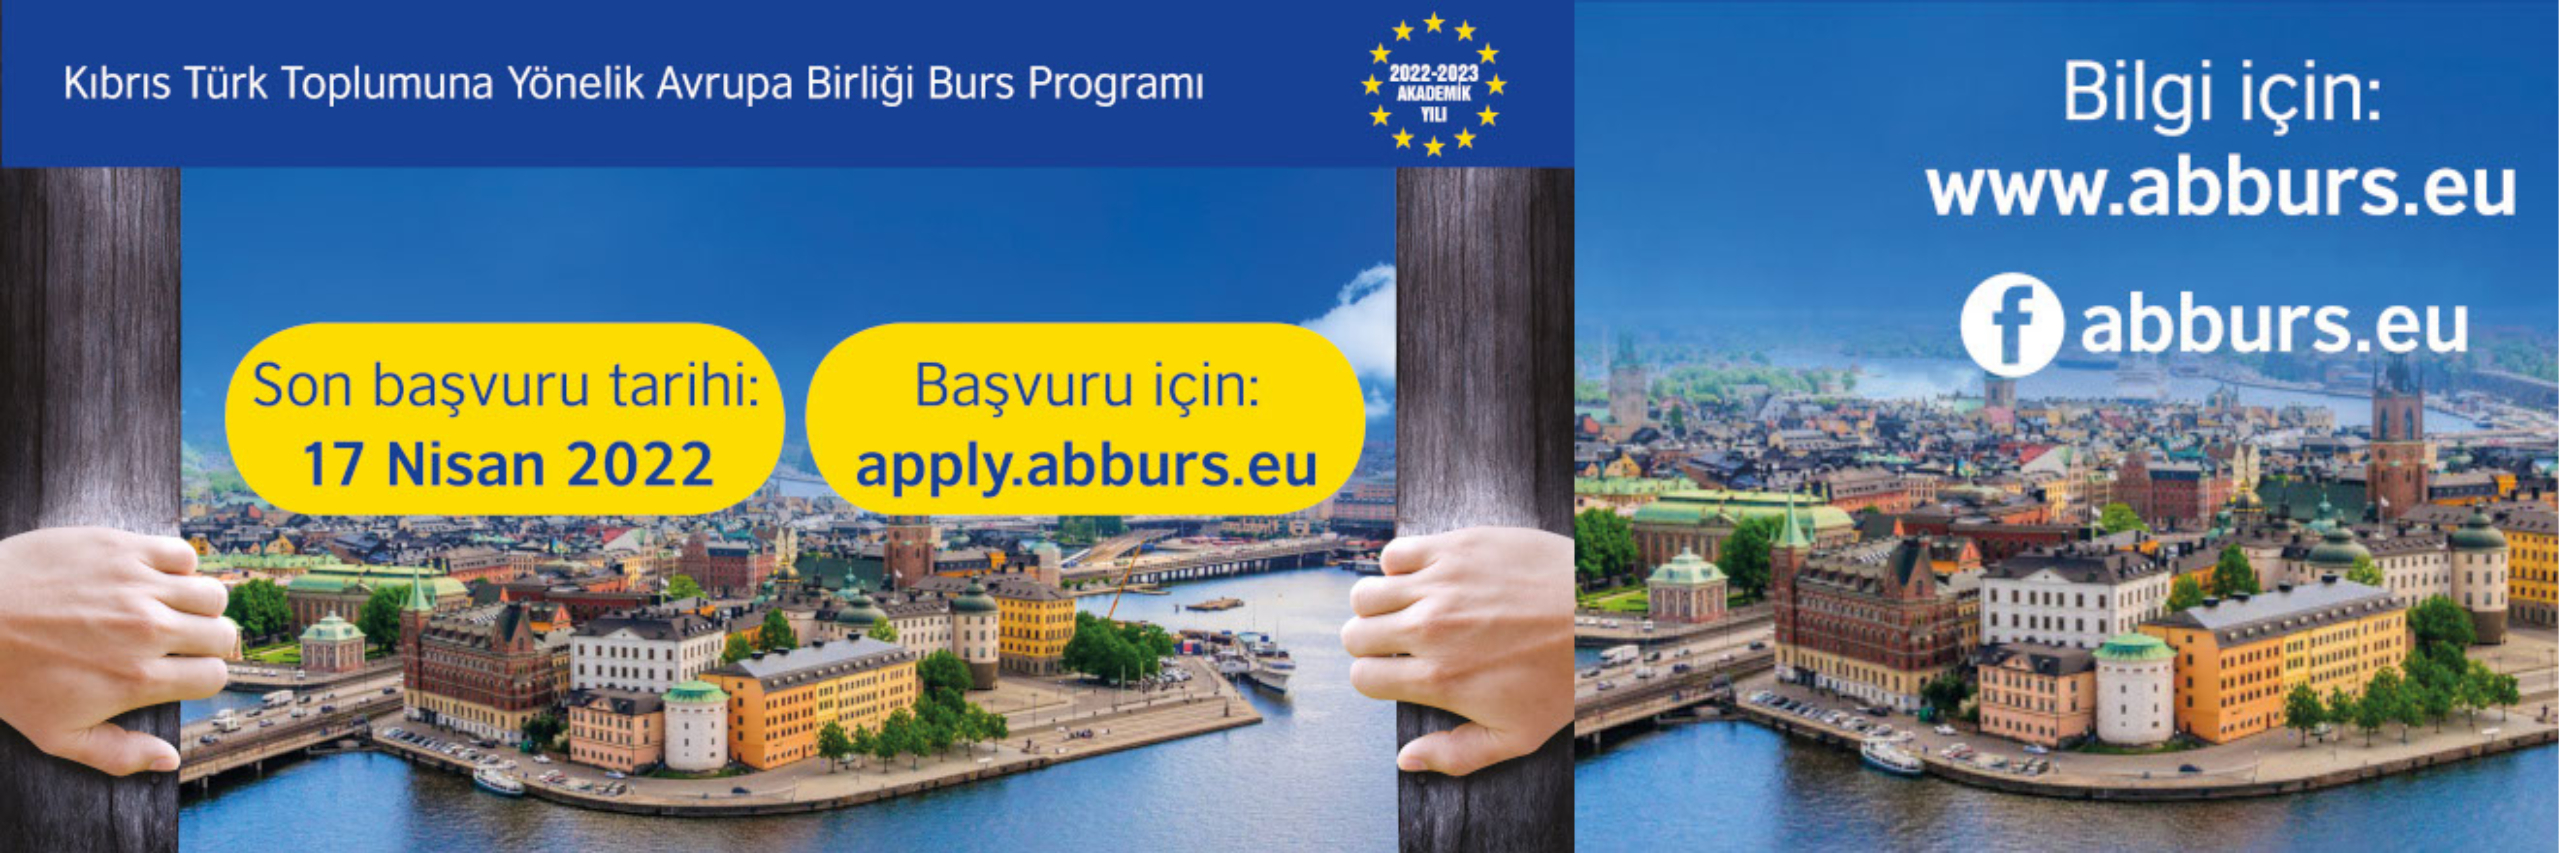 Kıbrıs Türk Topluma Yönelik Avrupa Birliği Burs Programı